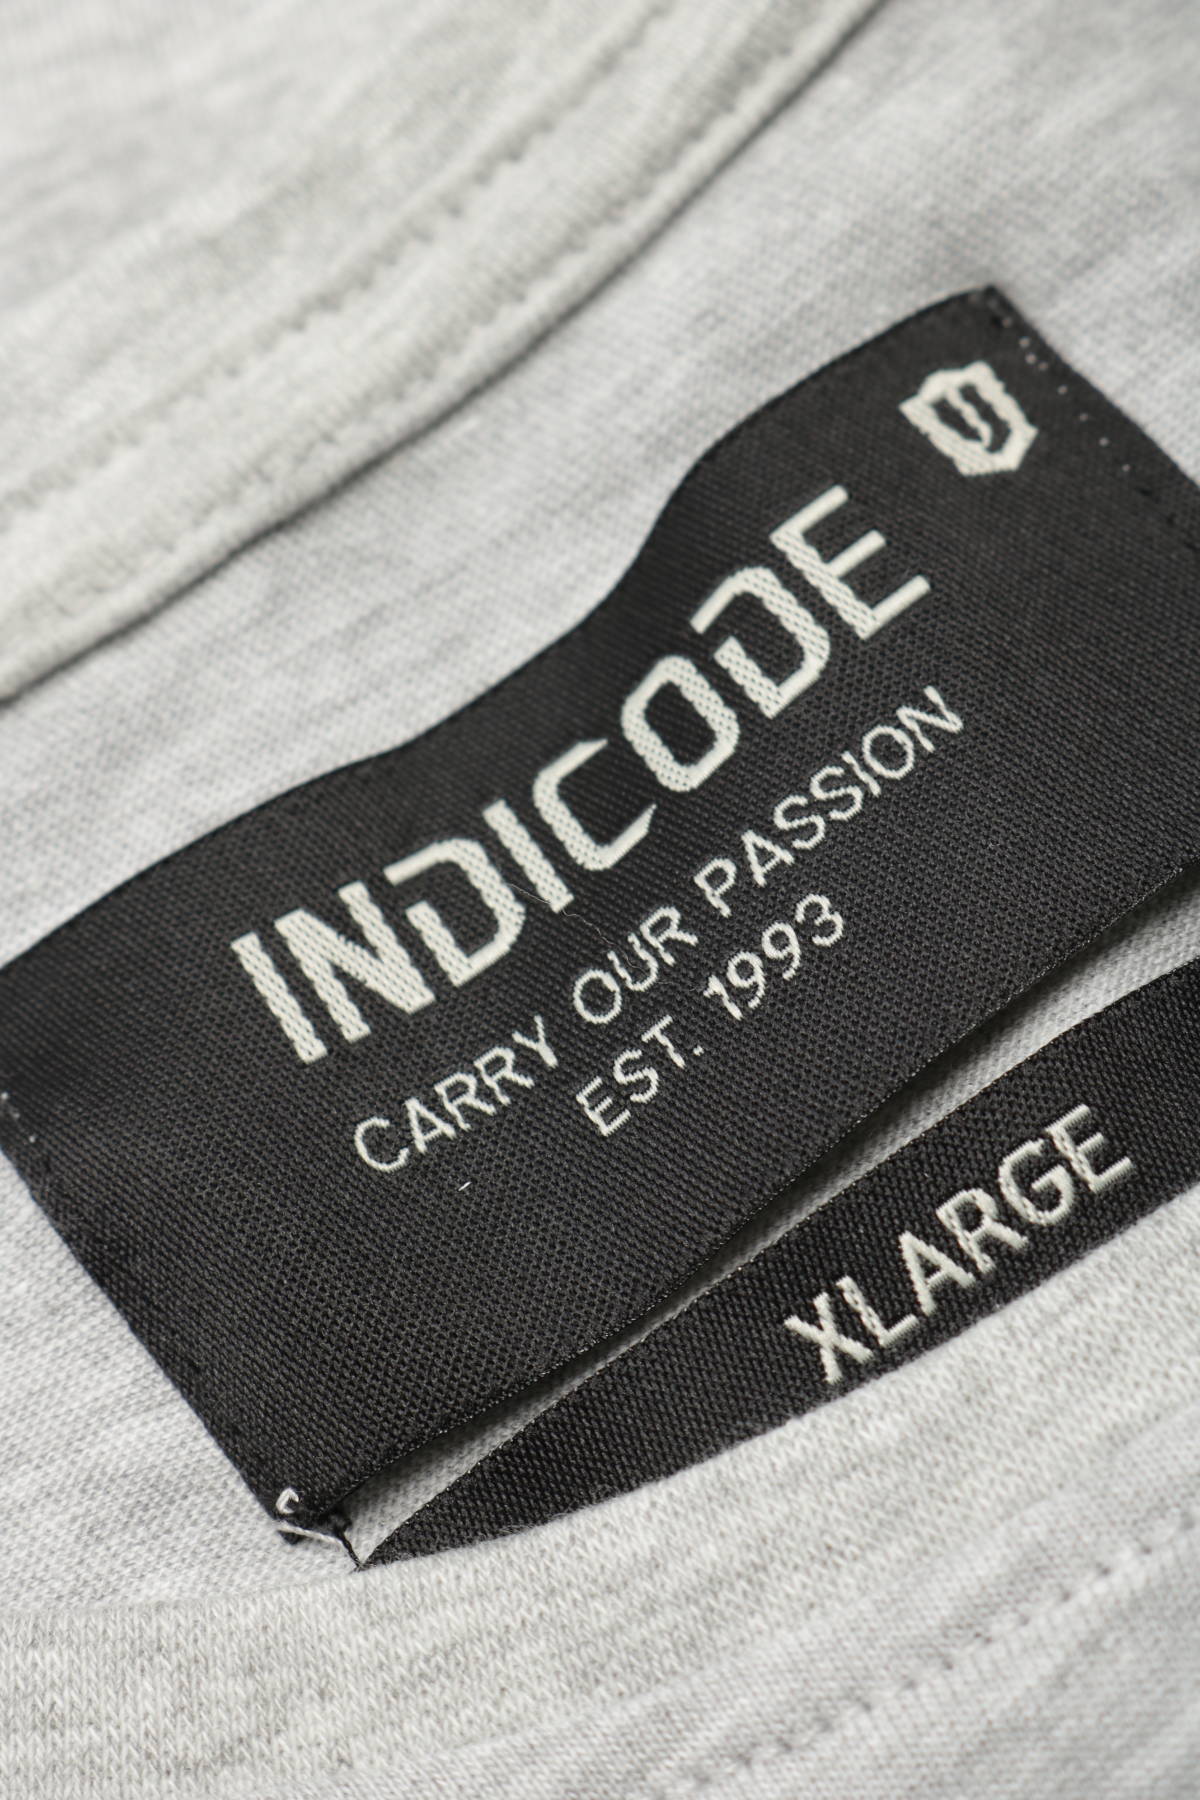 Тениска INDICODE3